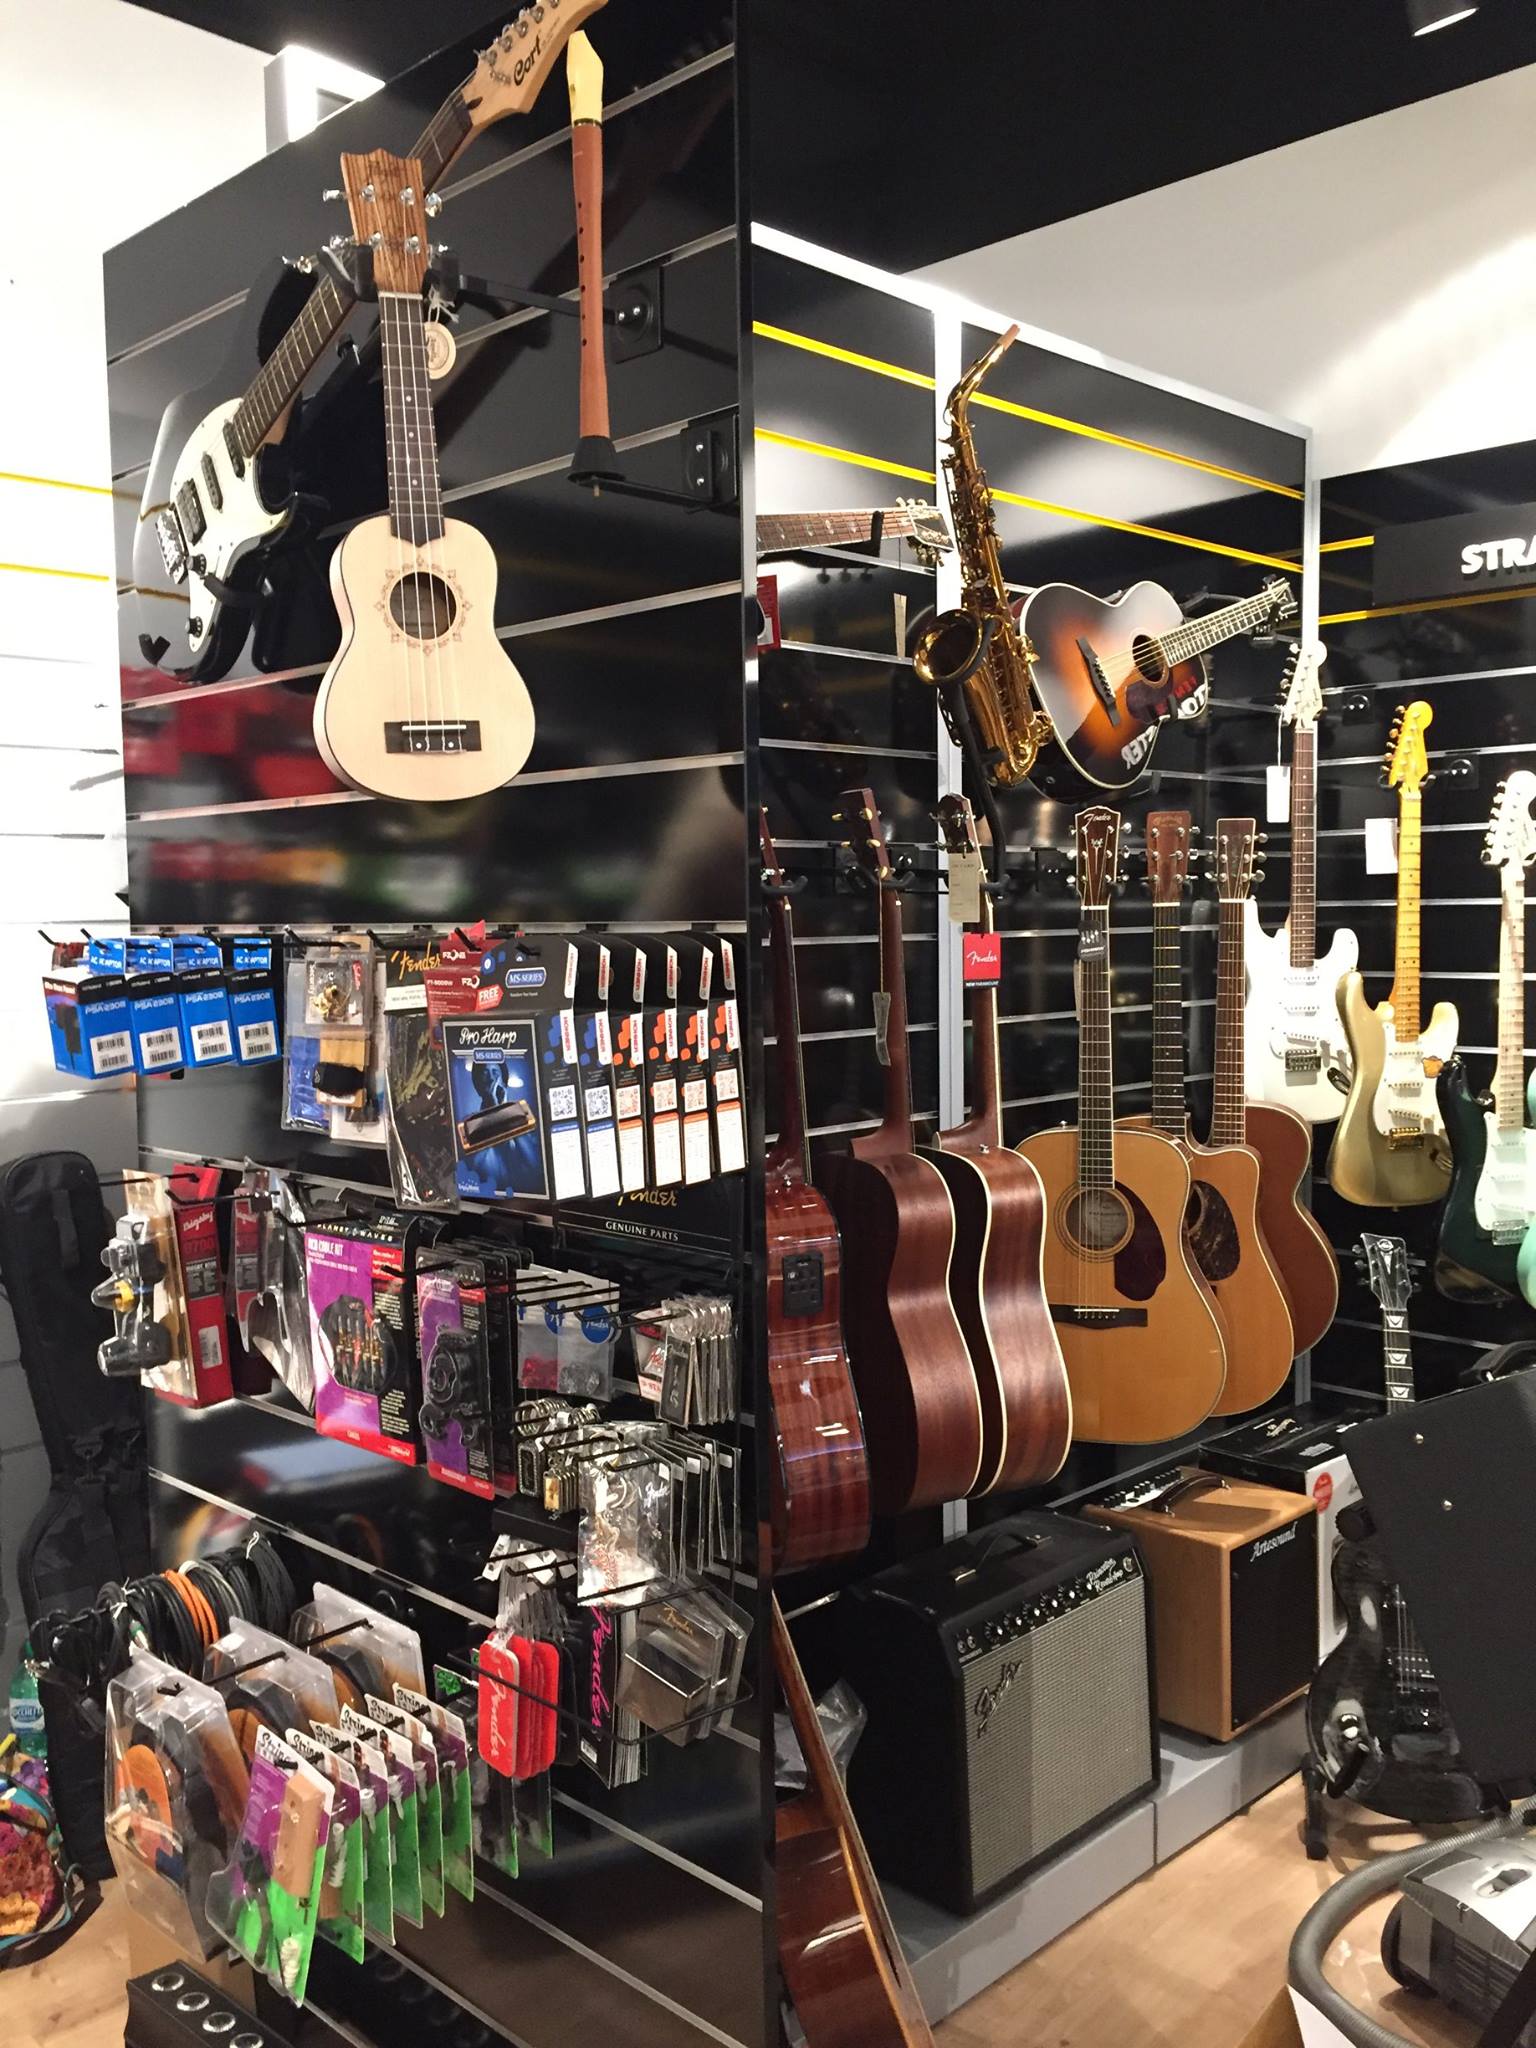 Gamma di accessori musicali nel nostro negozio. R&D sound è a Lugano ed è raggiungibile da Como, Bellinzona, Locarno e da tutto il Ticino.